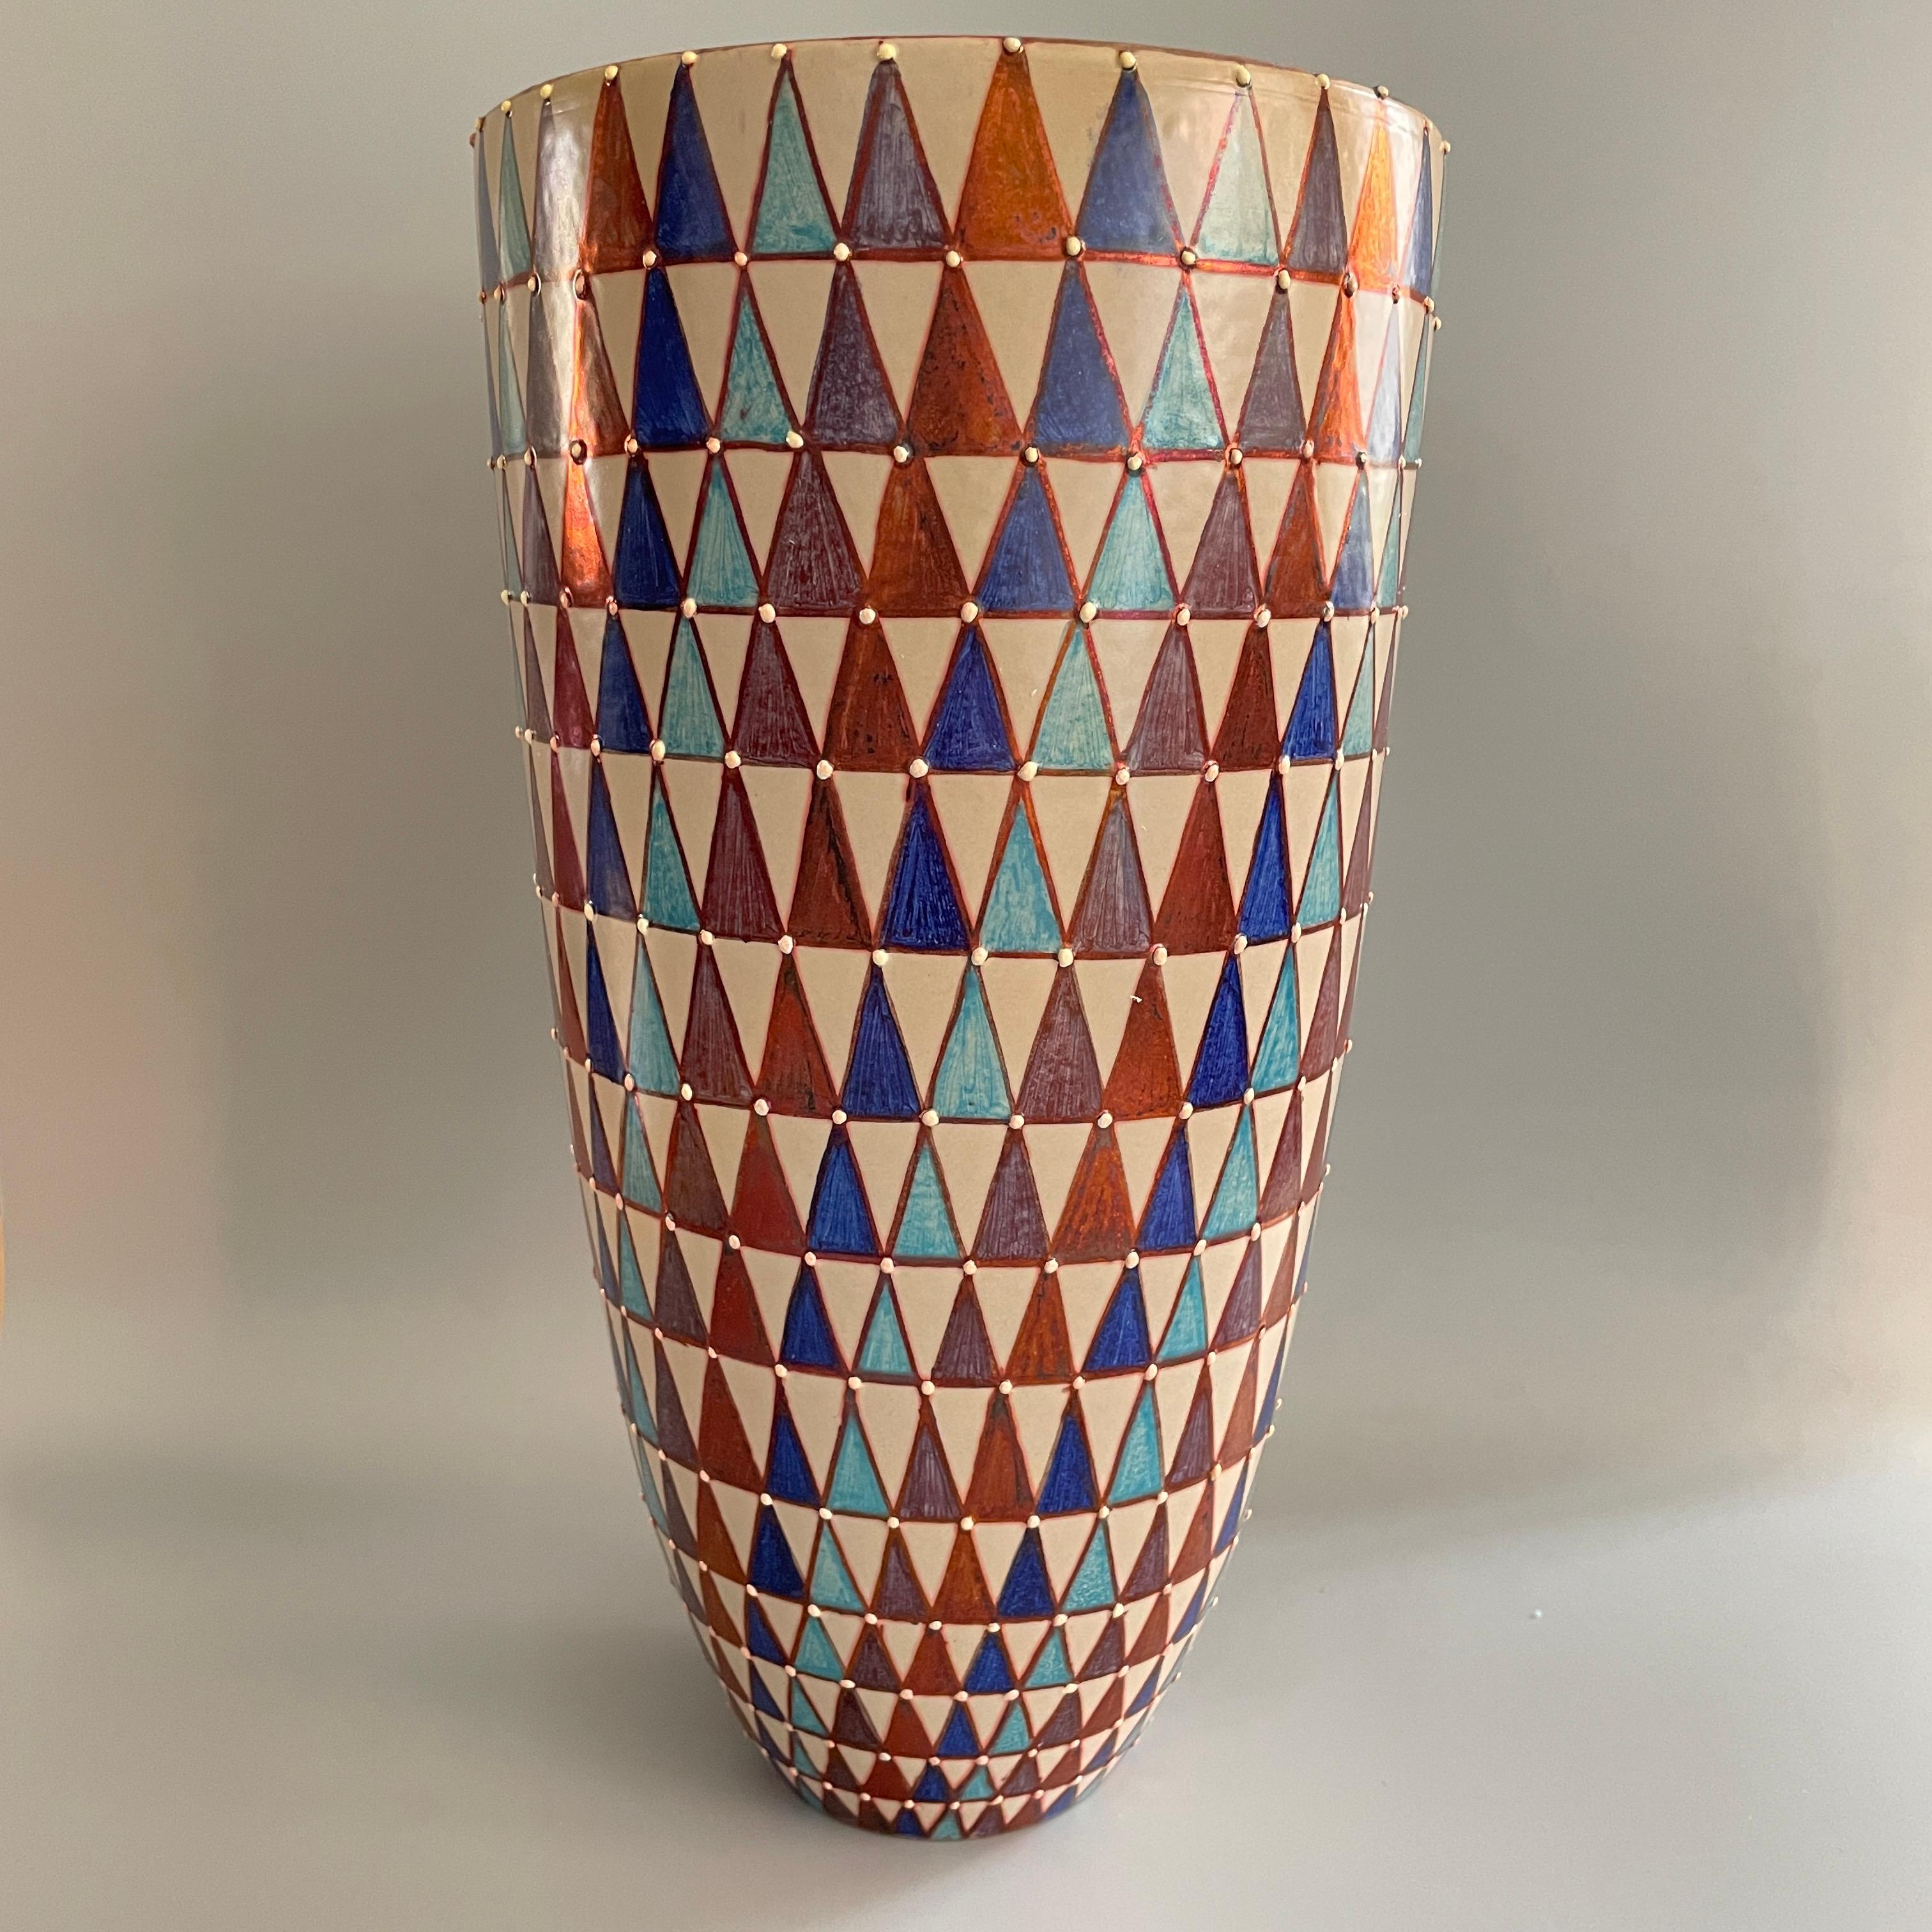 Vase Roma, faïence à réduction intégrale (majolique) 40cm de hauteur 20cm de diamètre, pièce unique, 2020.

Bottega Vignoli est une marque de céramique artistique basée à Faenza, l'un des centres de production de céramique les plus représentatifs